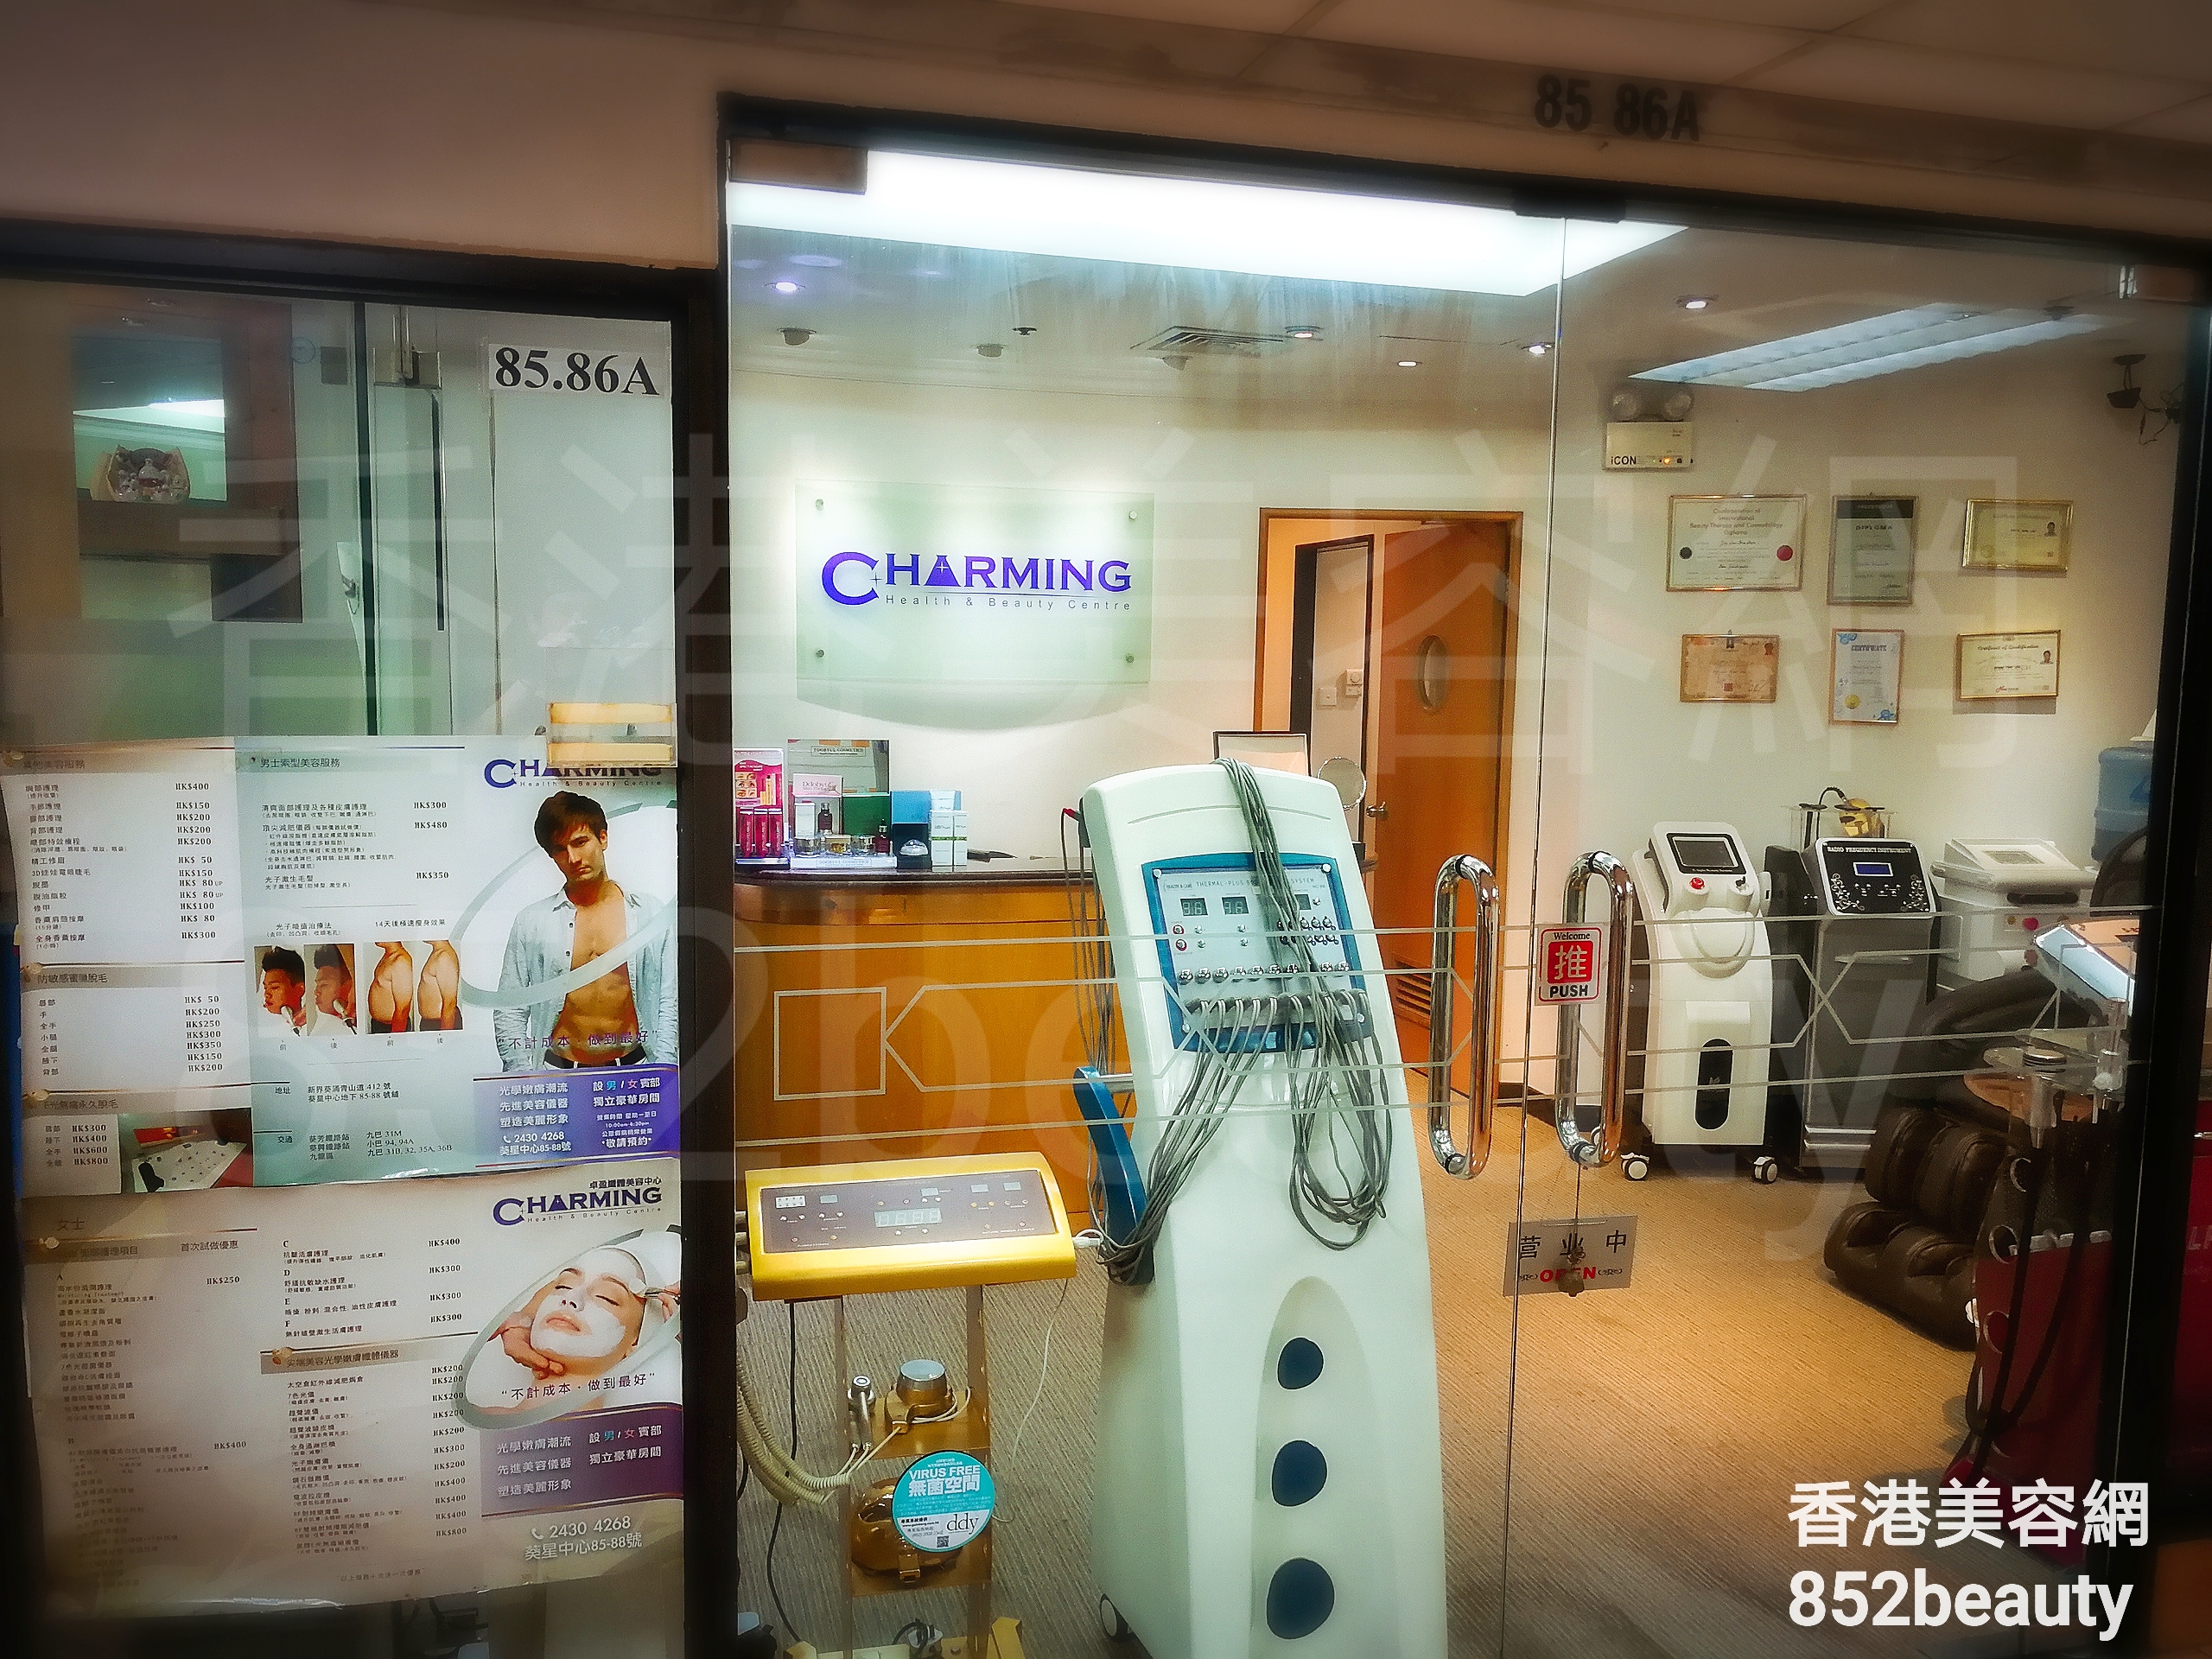 脫毛: Charming Health & Beauty Centre